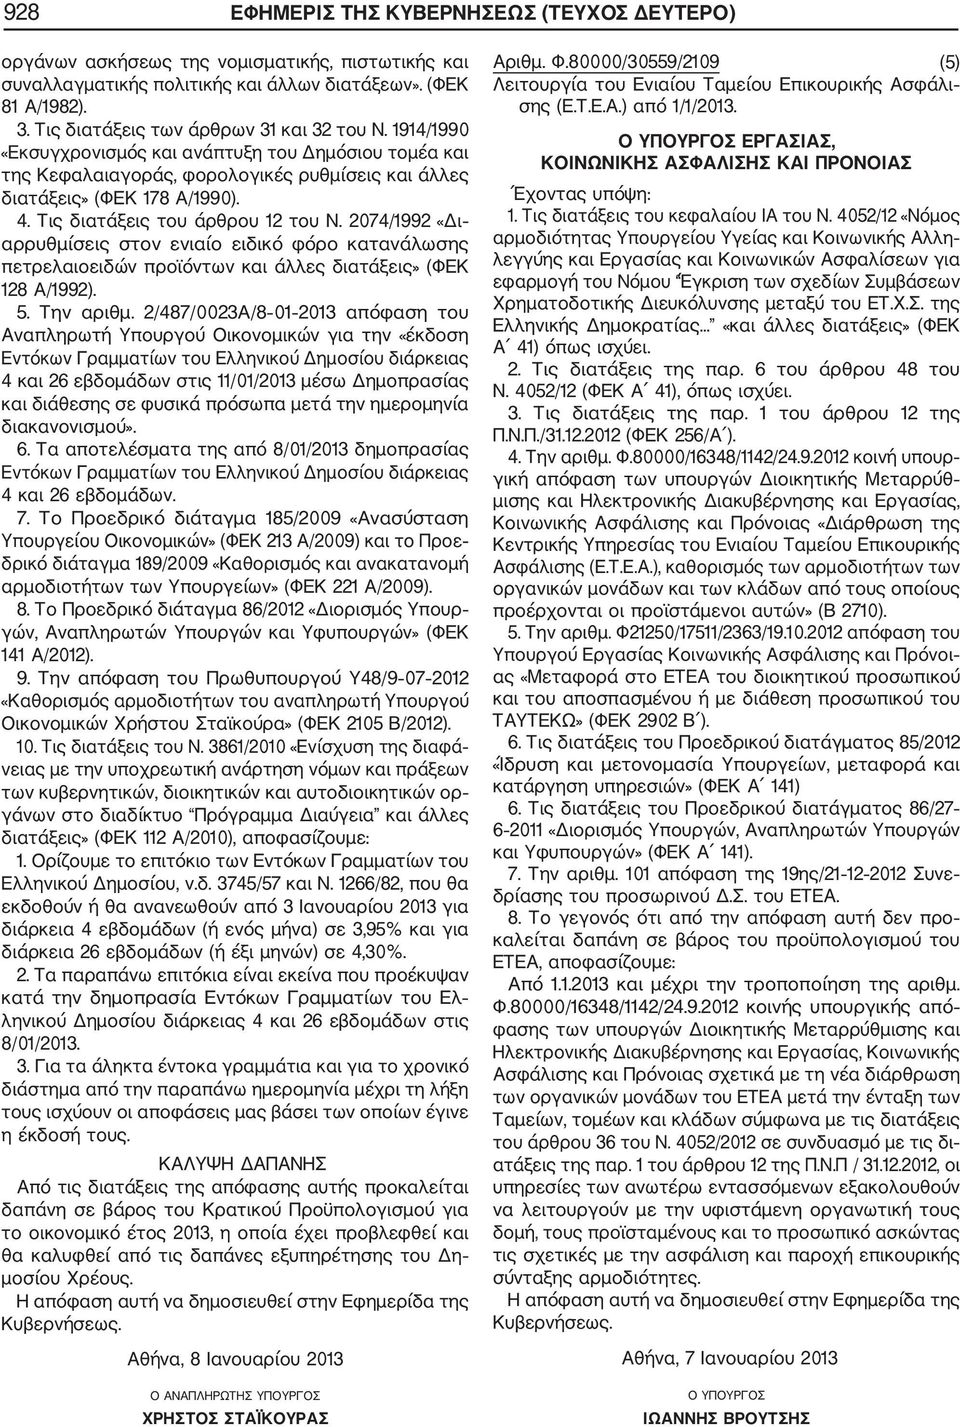 Τις διατάξεις του άρθρου 12 του Ν. 2074/1992 «Δι αρρυθμίσεις στον ενιαίο ειδικό φόρο κατανάλωσης πετρελαιοειδών προϊόντων και άλλες διατάξεις» (ΦΕΚ 128 Α/1992). 5. Την αριθμ.